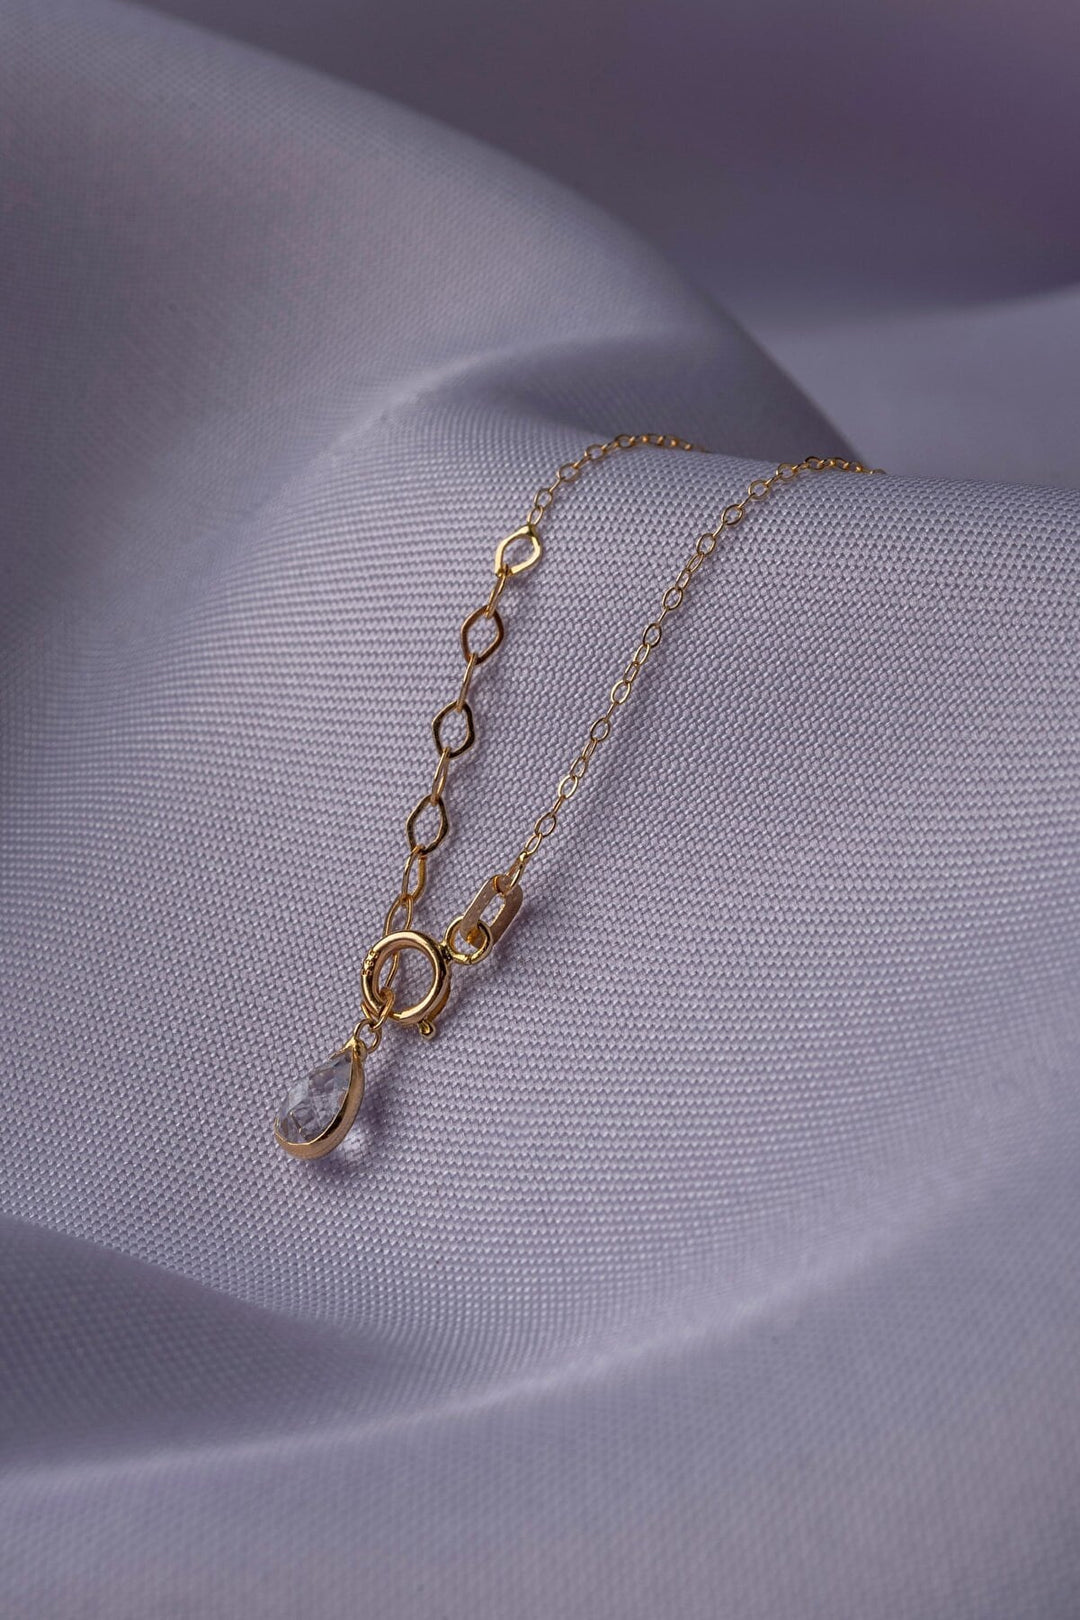 14K Gold Flower Special Design Necklace - vclfkol140